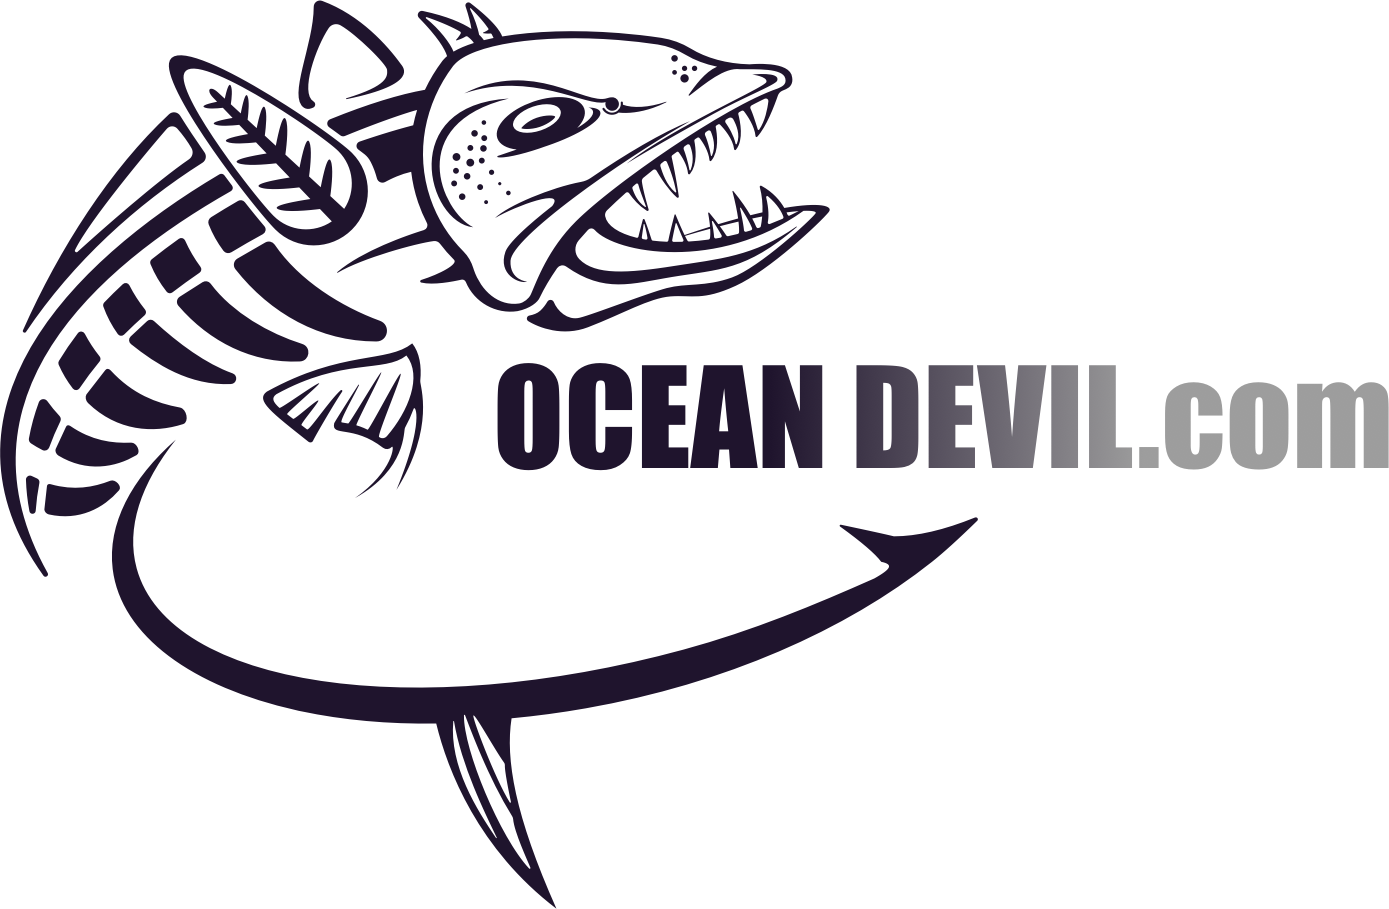 Ocean Devil